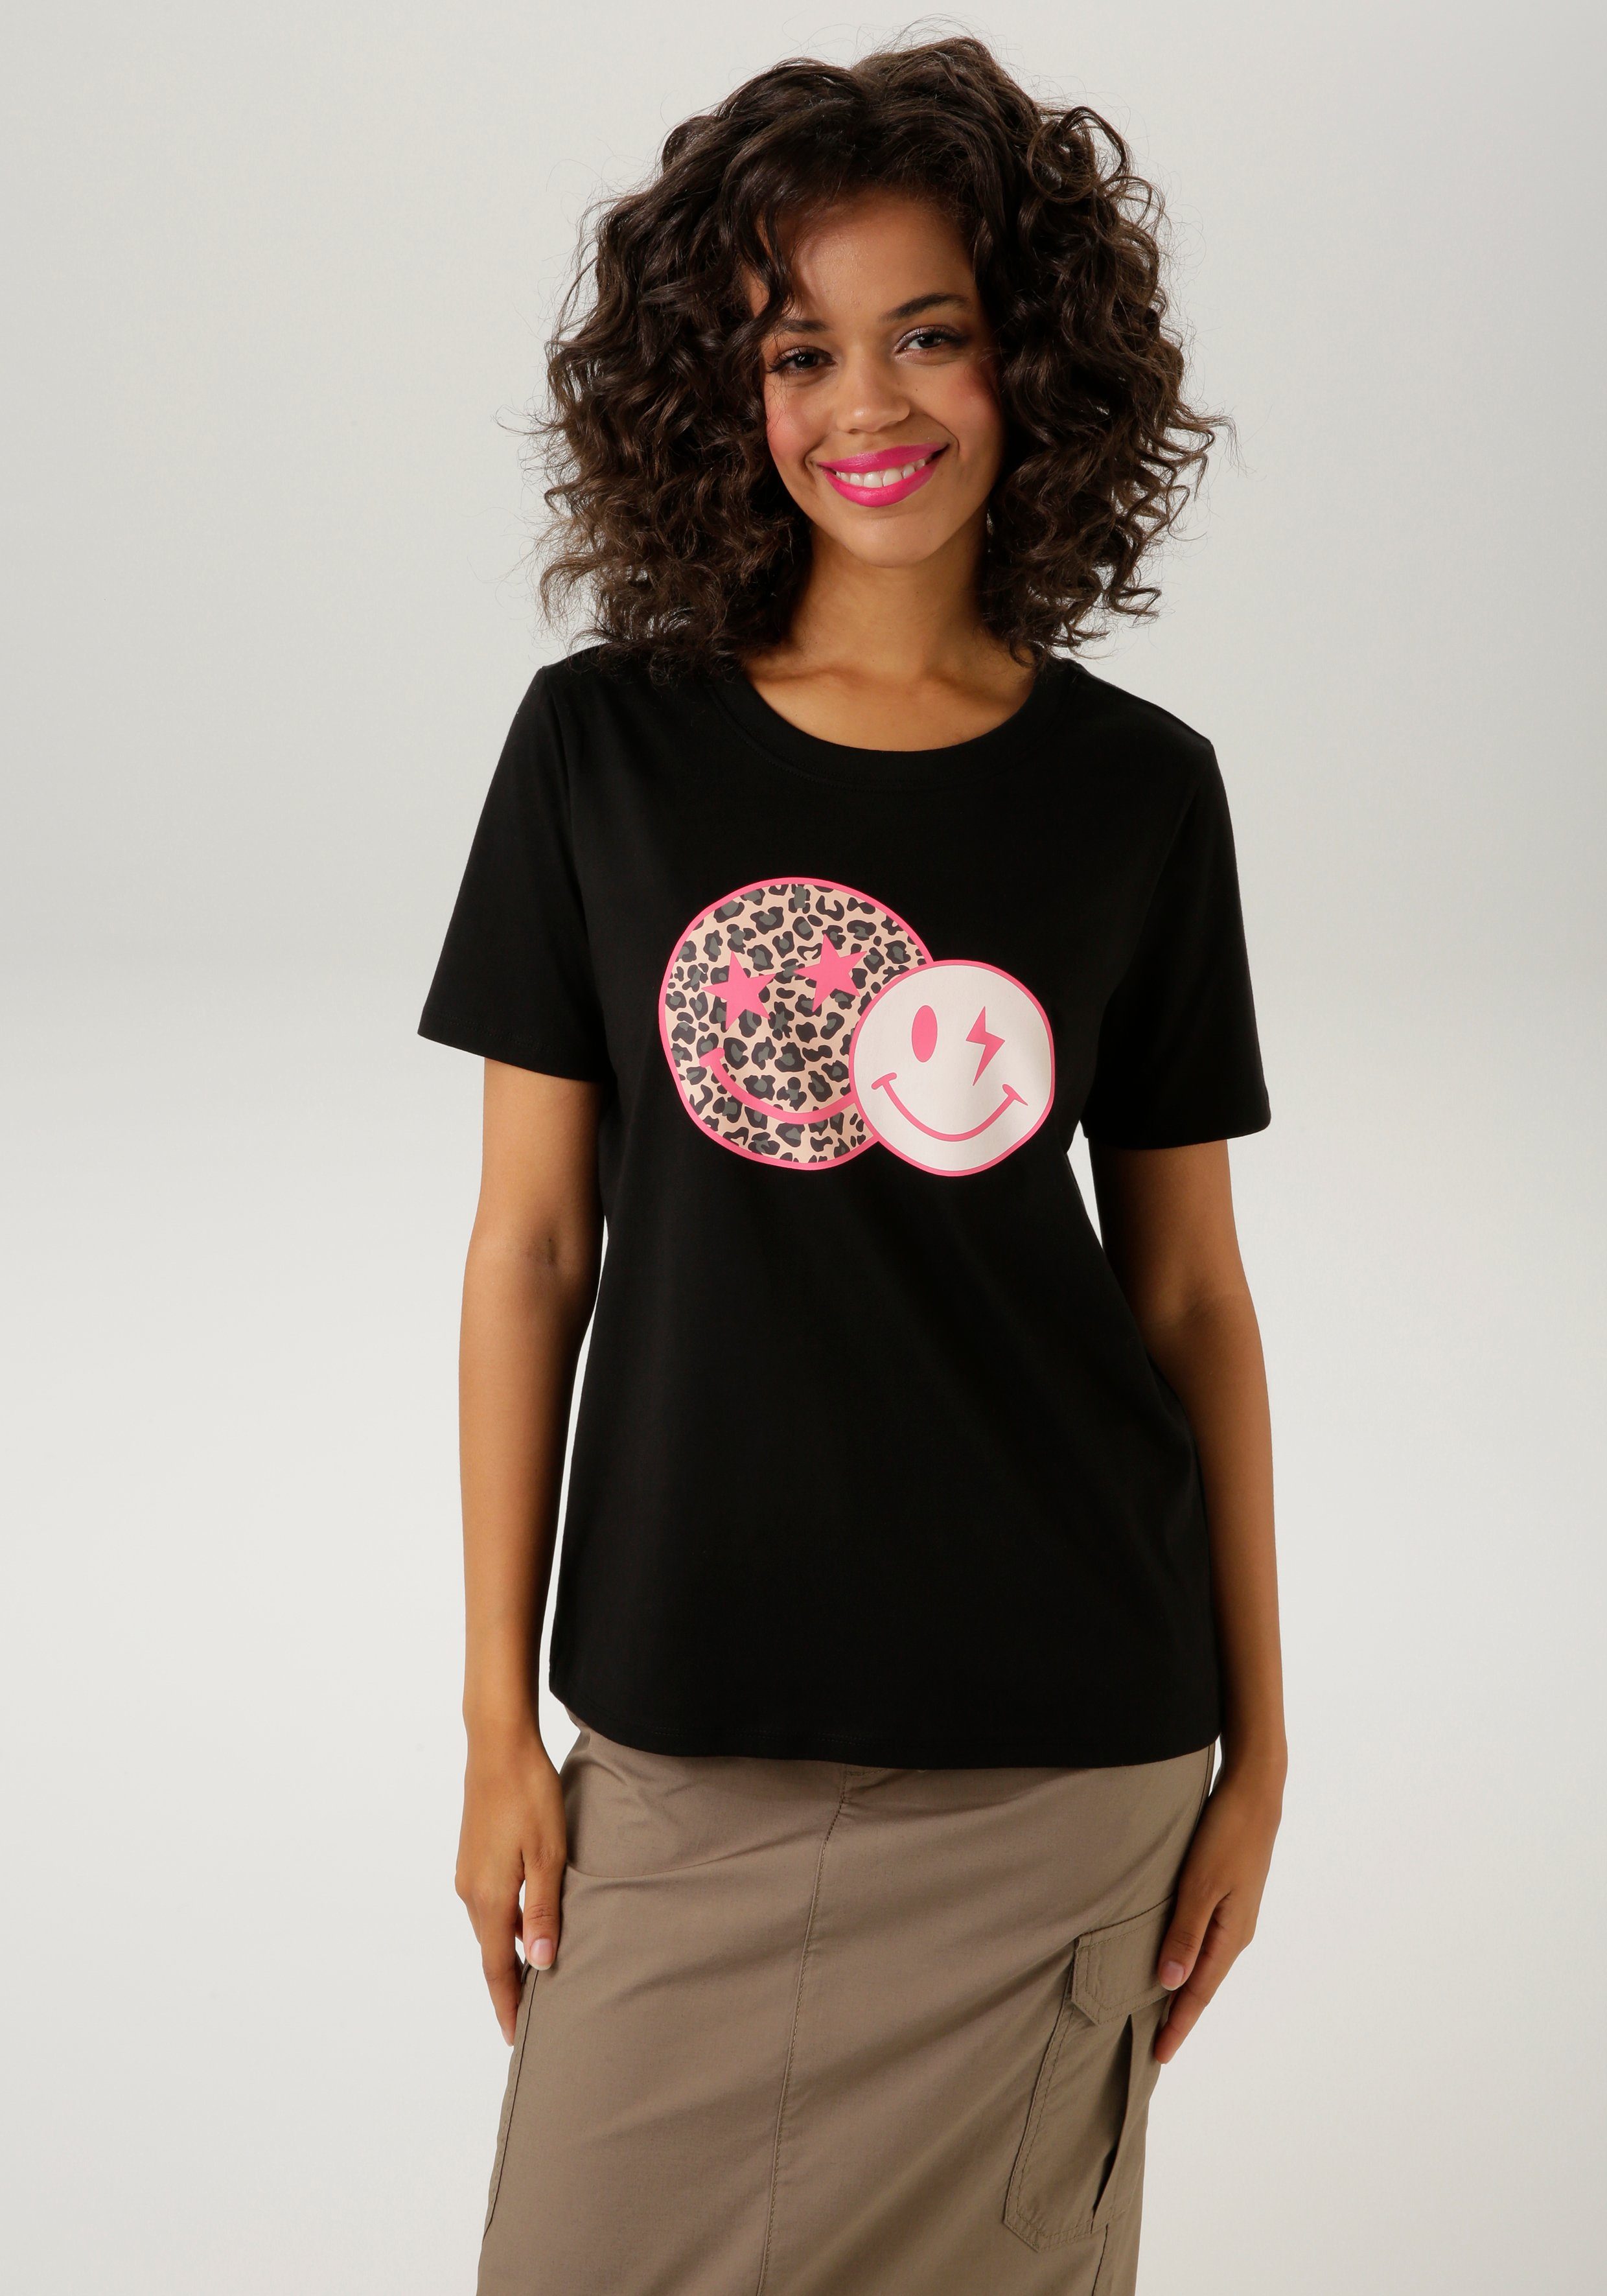 mit Aniston schwarz-pink-beige-weiß-grau bedruckt T-Shirt Smileys coolen CASUAL